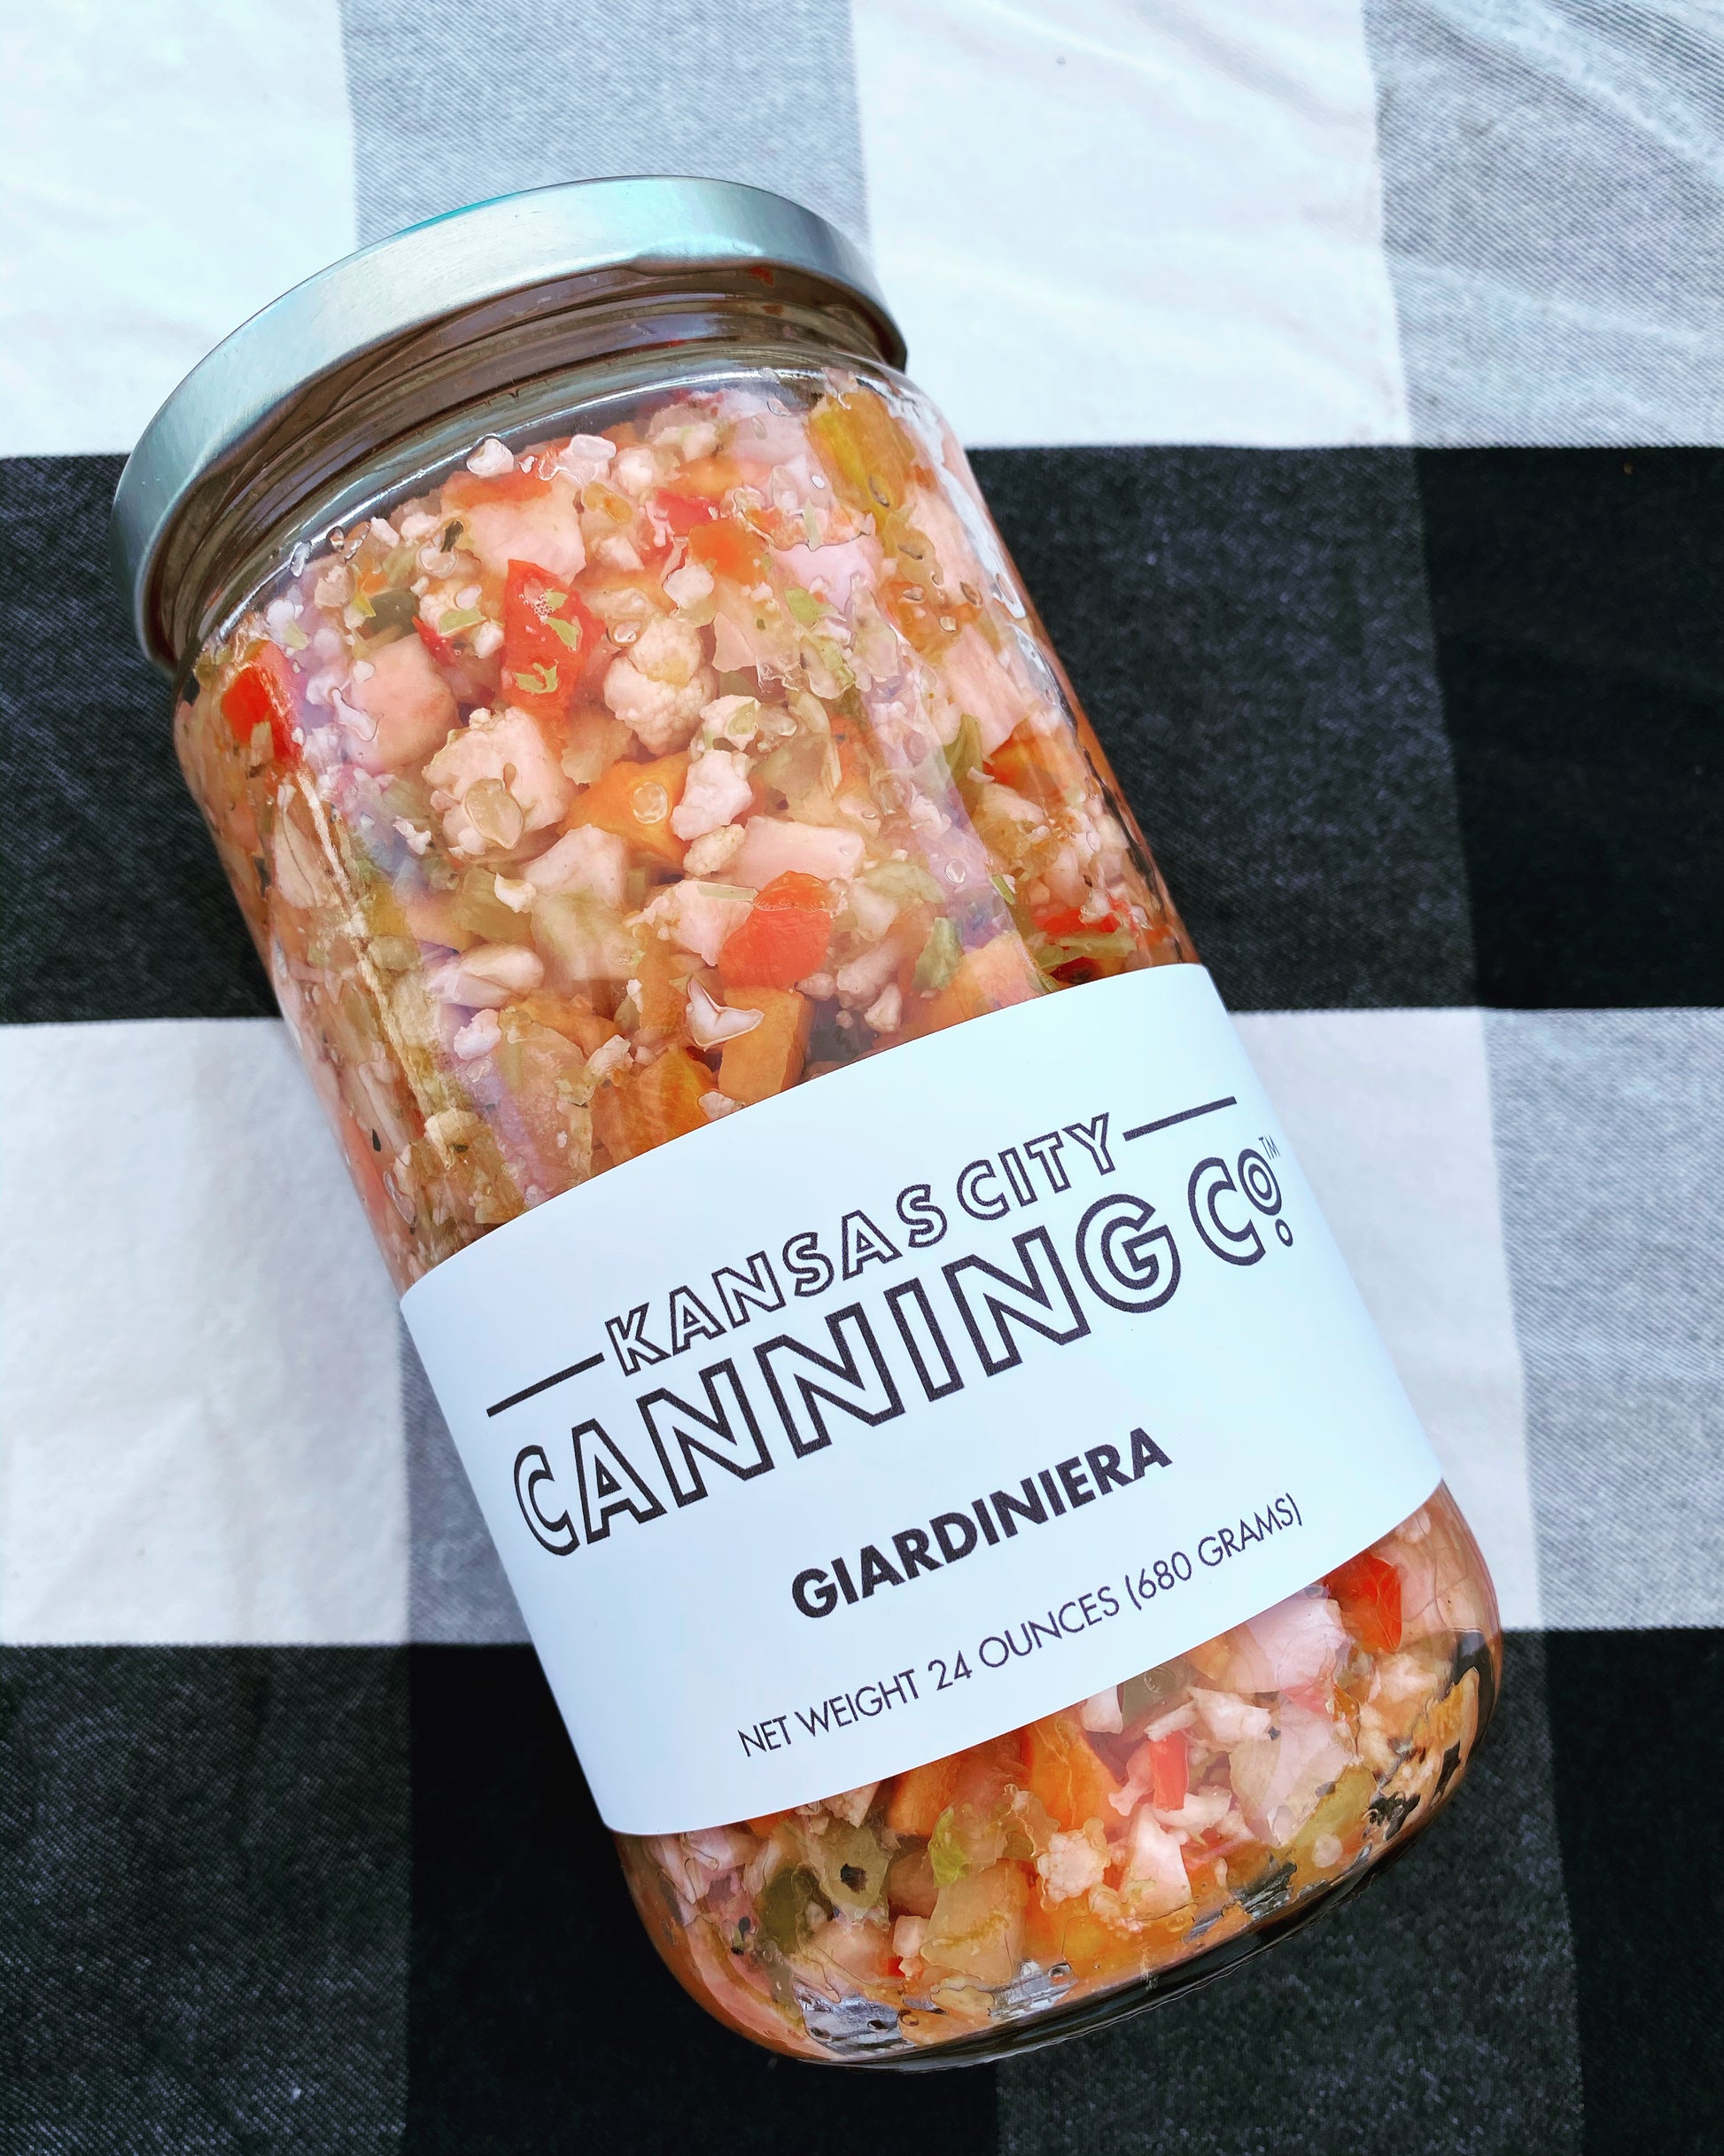 Giardiniera - Kansas City Canning Co.